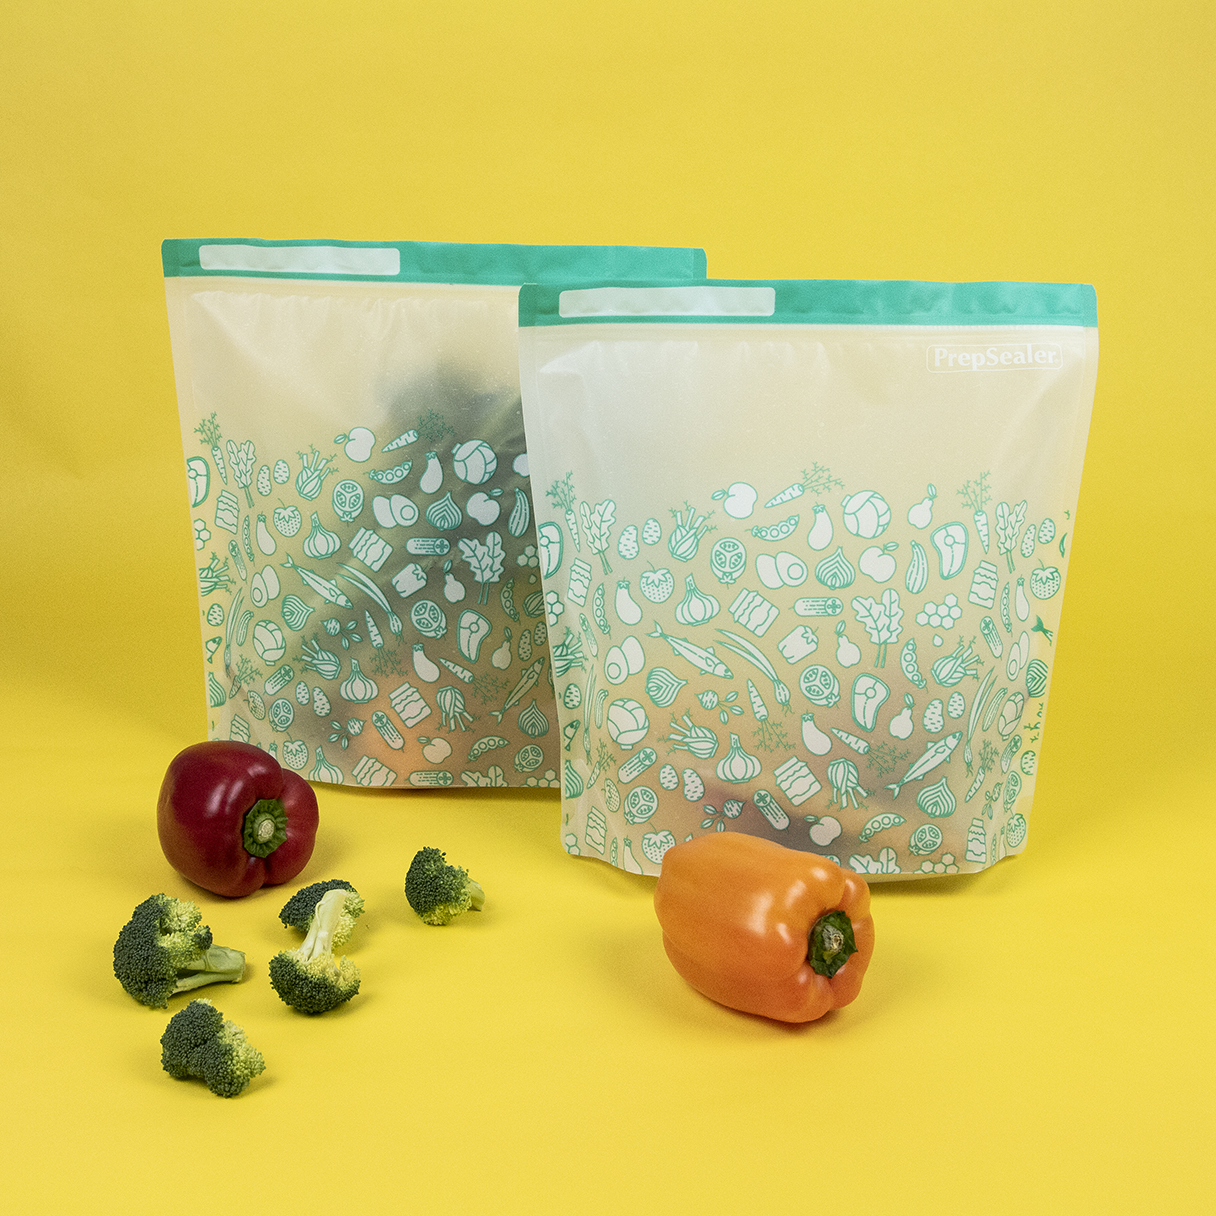 Lock in Flavor Goodbye Food Waste - Food Saving Vacuum Container –  PrepSealer